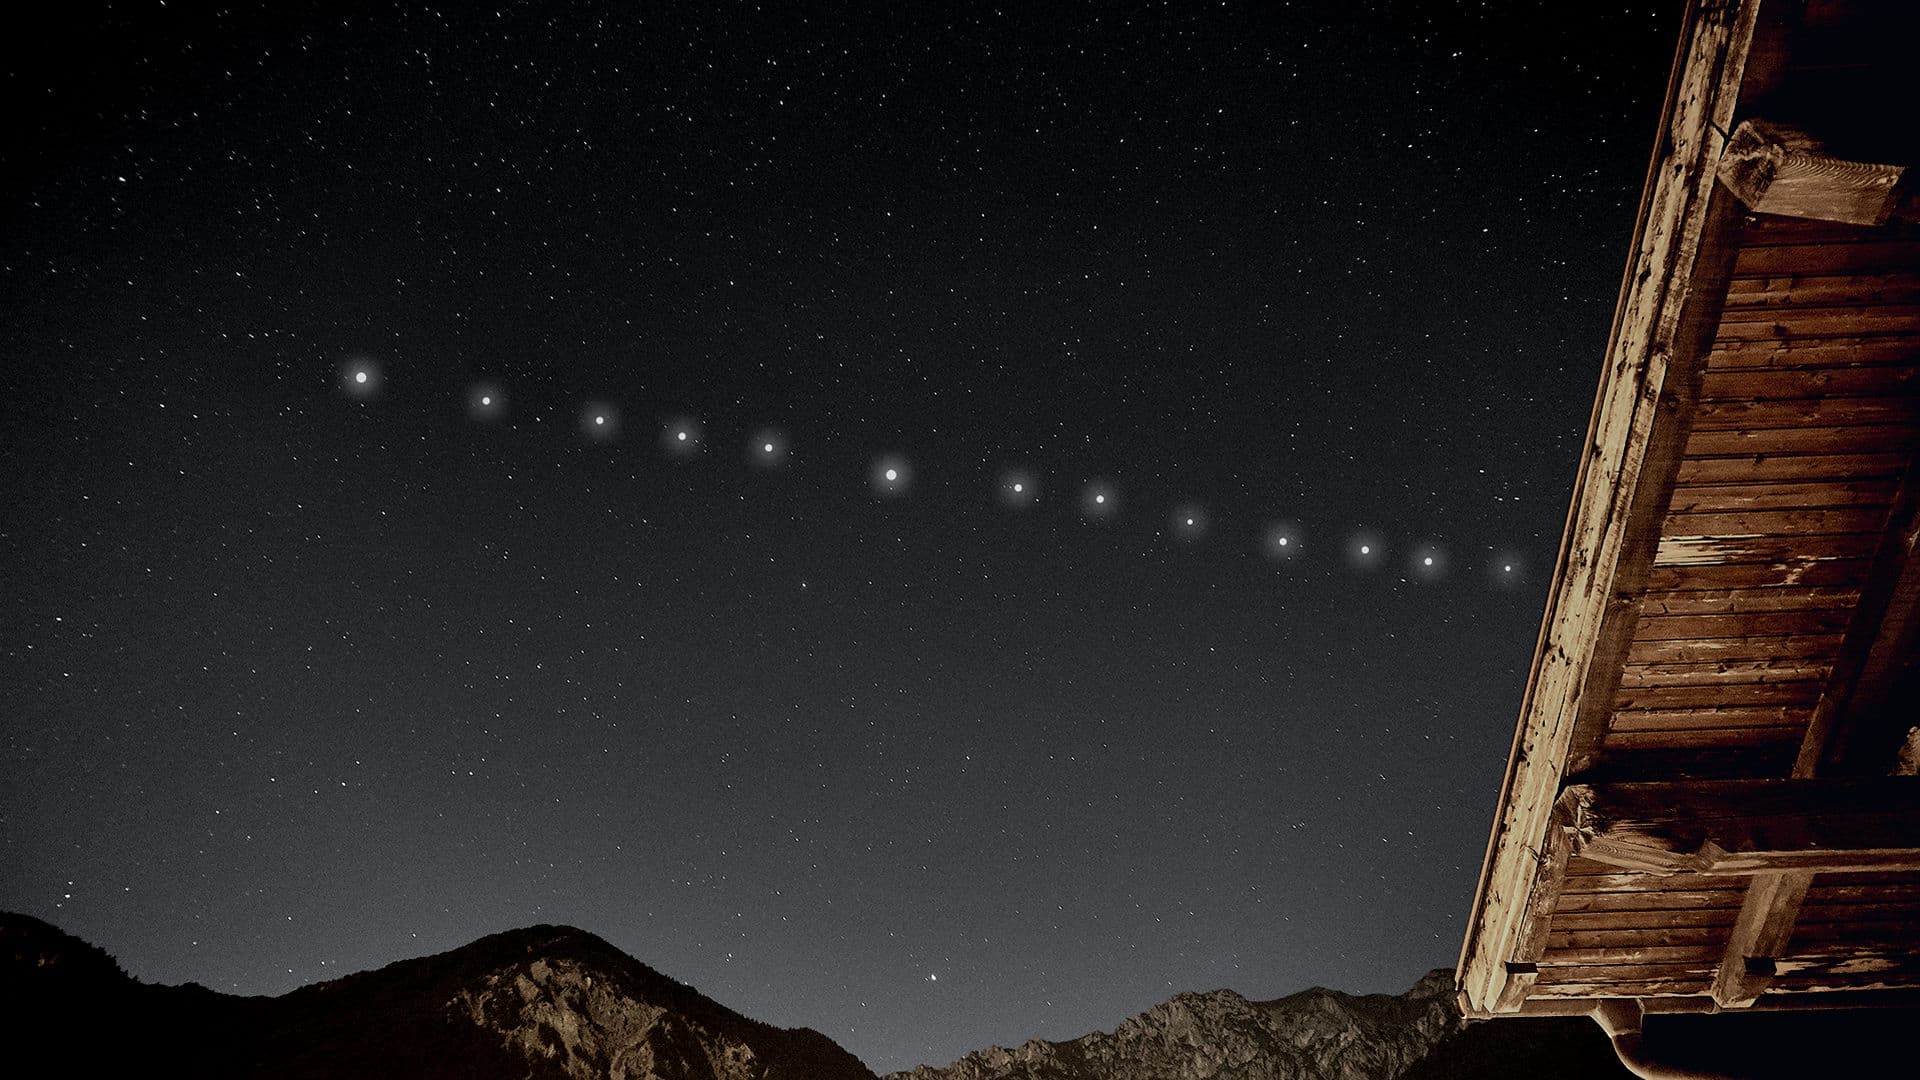 Comment voir les satellites Starlink de SpaceX dans le ciel